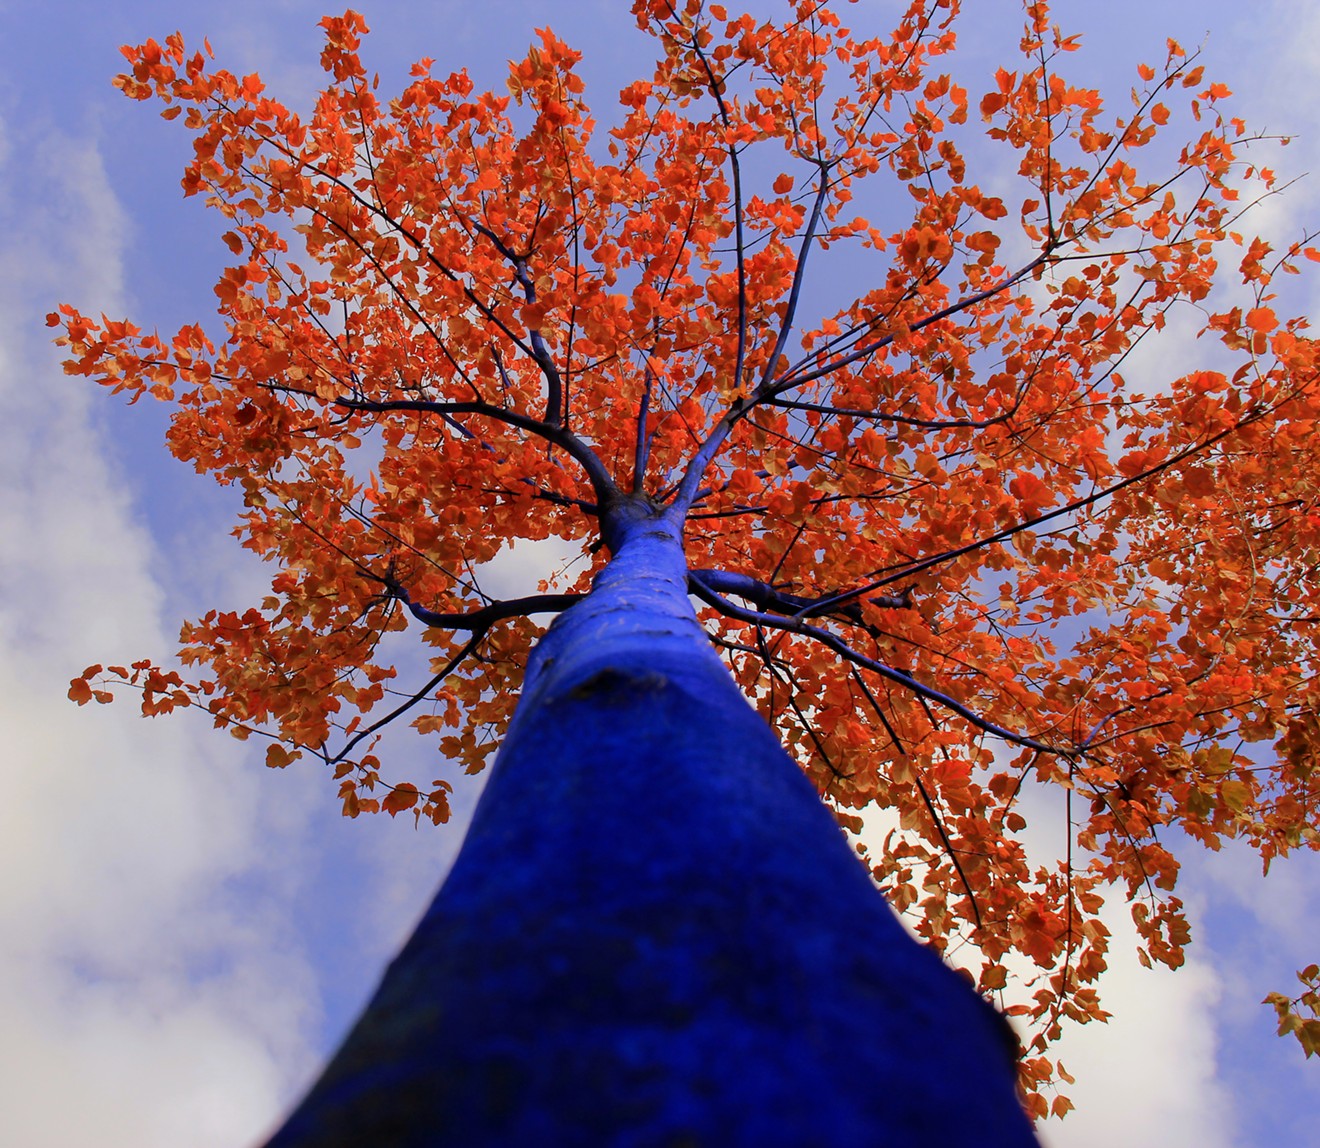 Konstantin Dimopoulos, blue tree with autumn foliage.